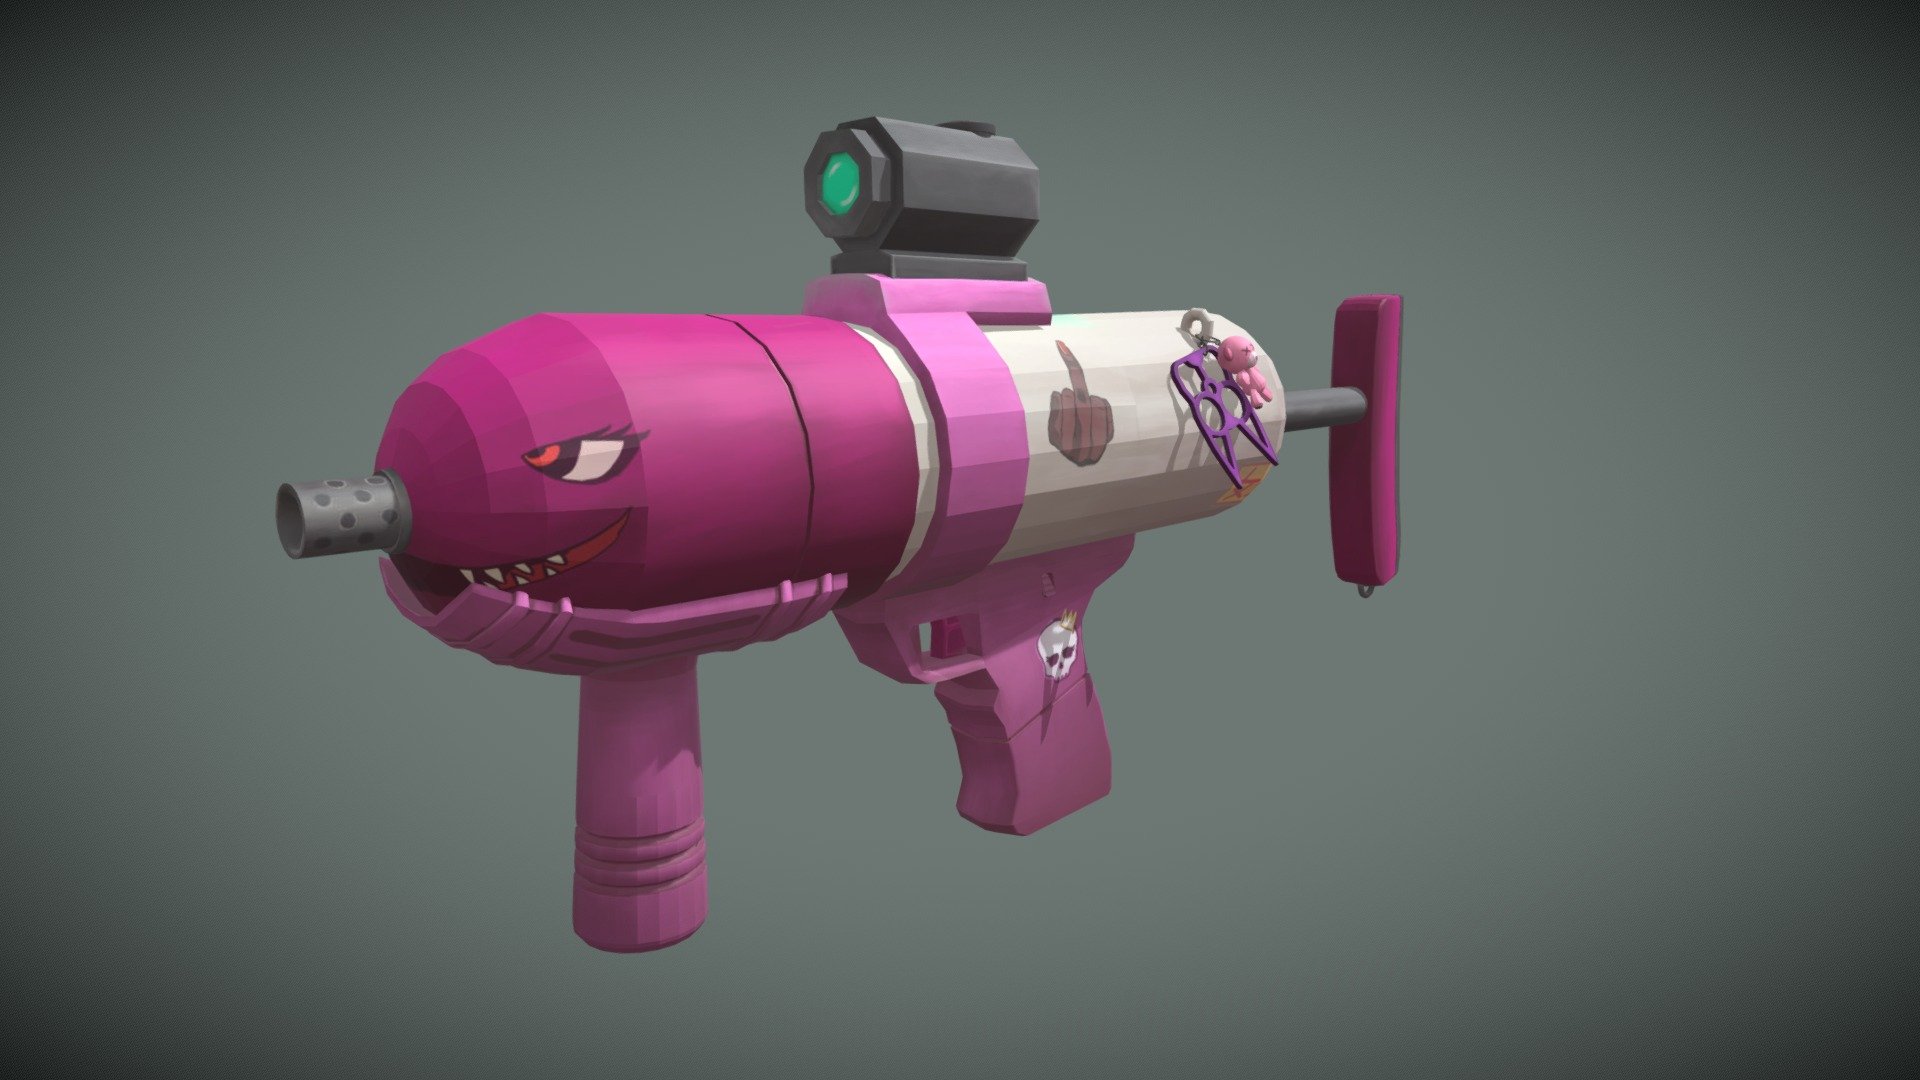 A Girlboss Water Gun - WaterGun - 3D model by jennyschiliro 3d model